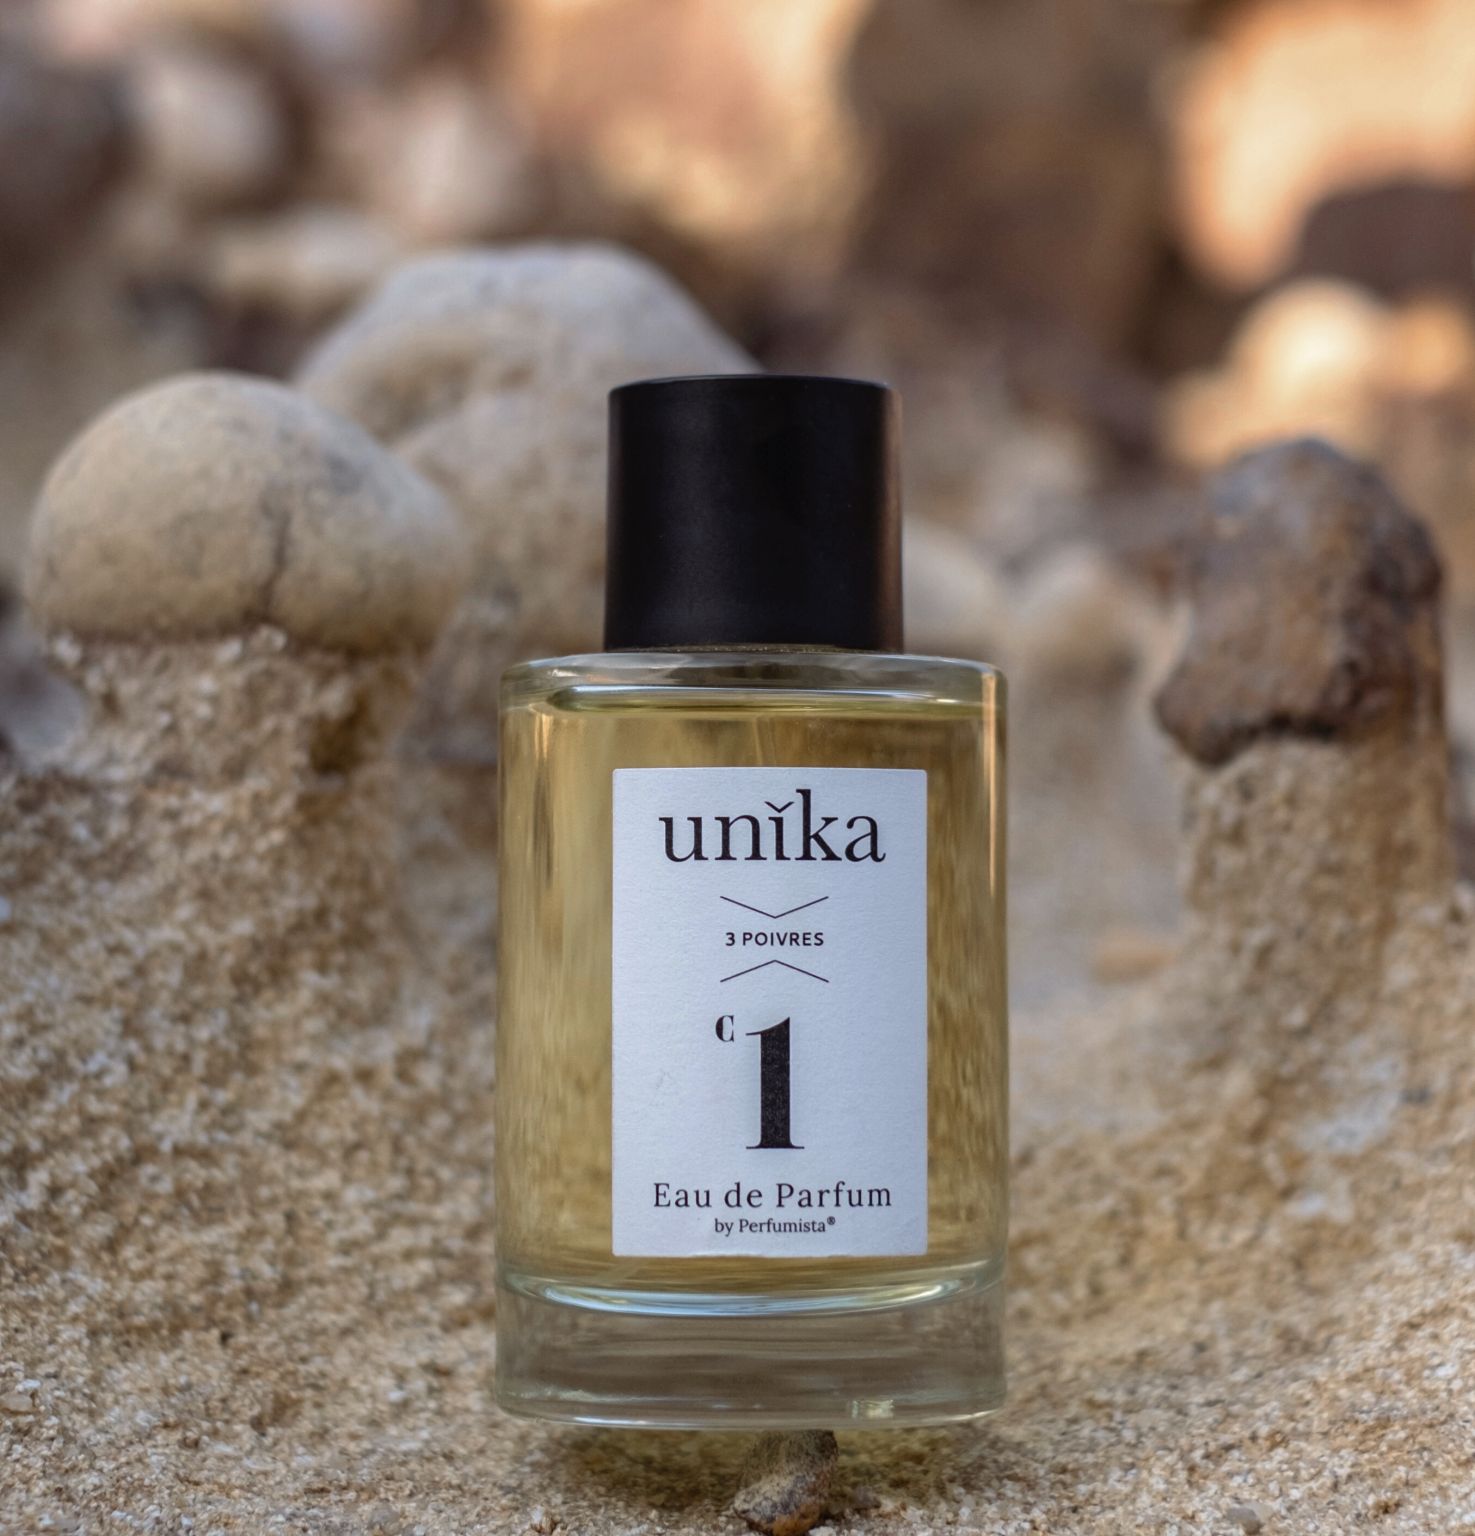 Eau de Parfum UNIKA

Texte et photos : UNIKA 
(Nos remerciements )
